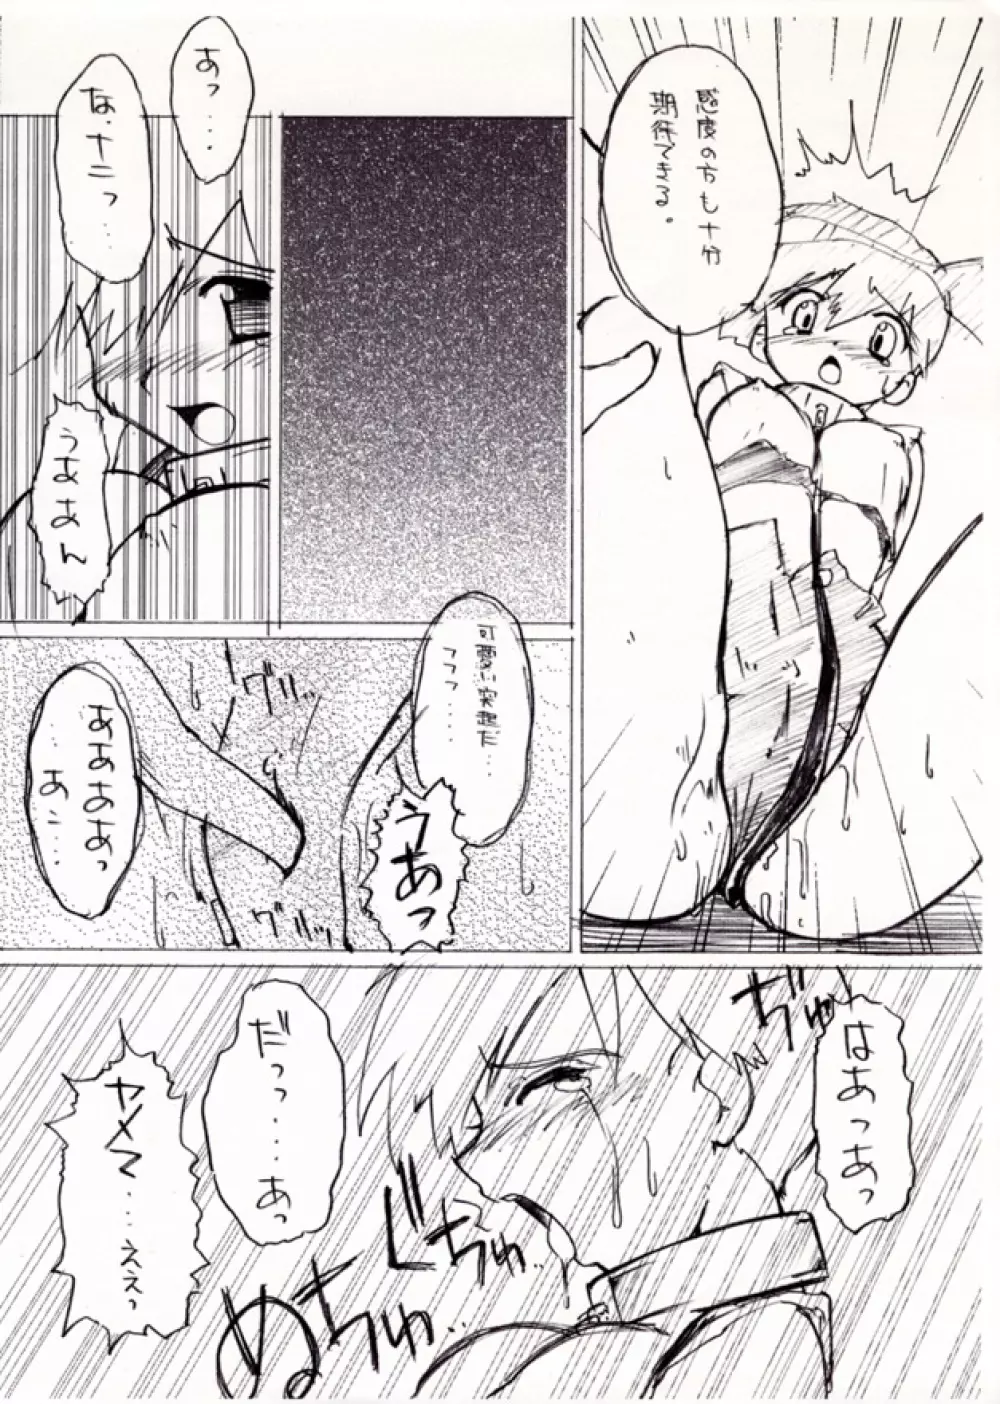 KASUMIX XPLOSION Kasumi Comic part5 16ページ